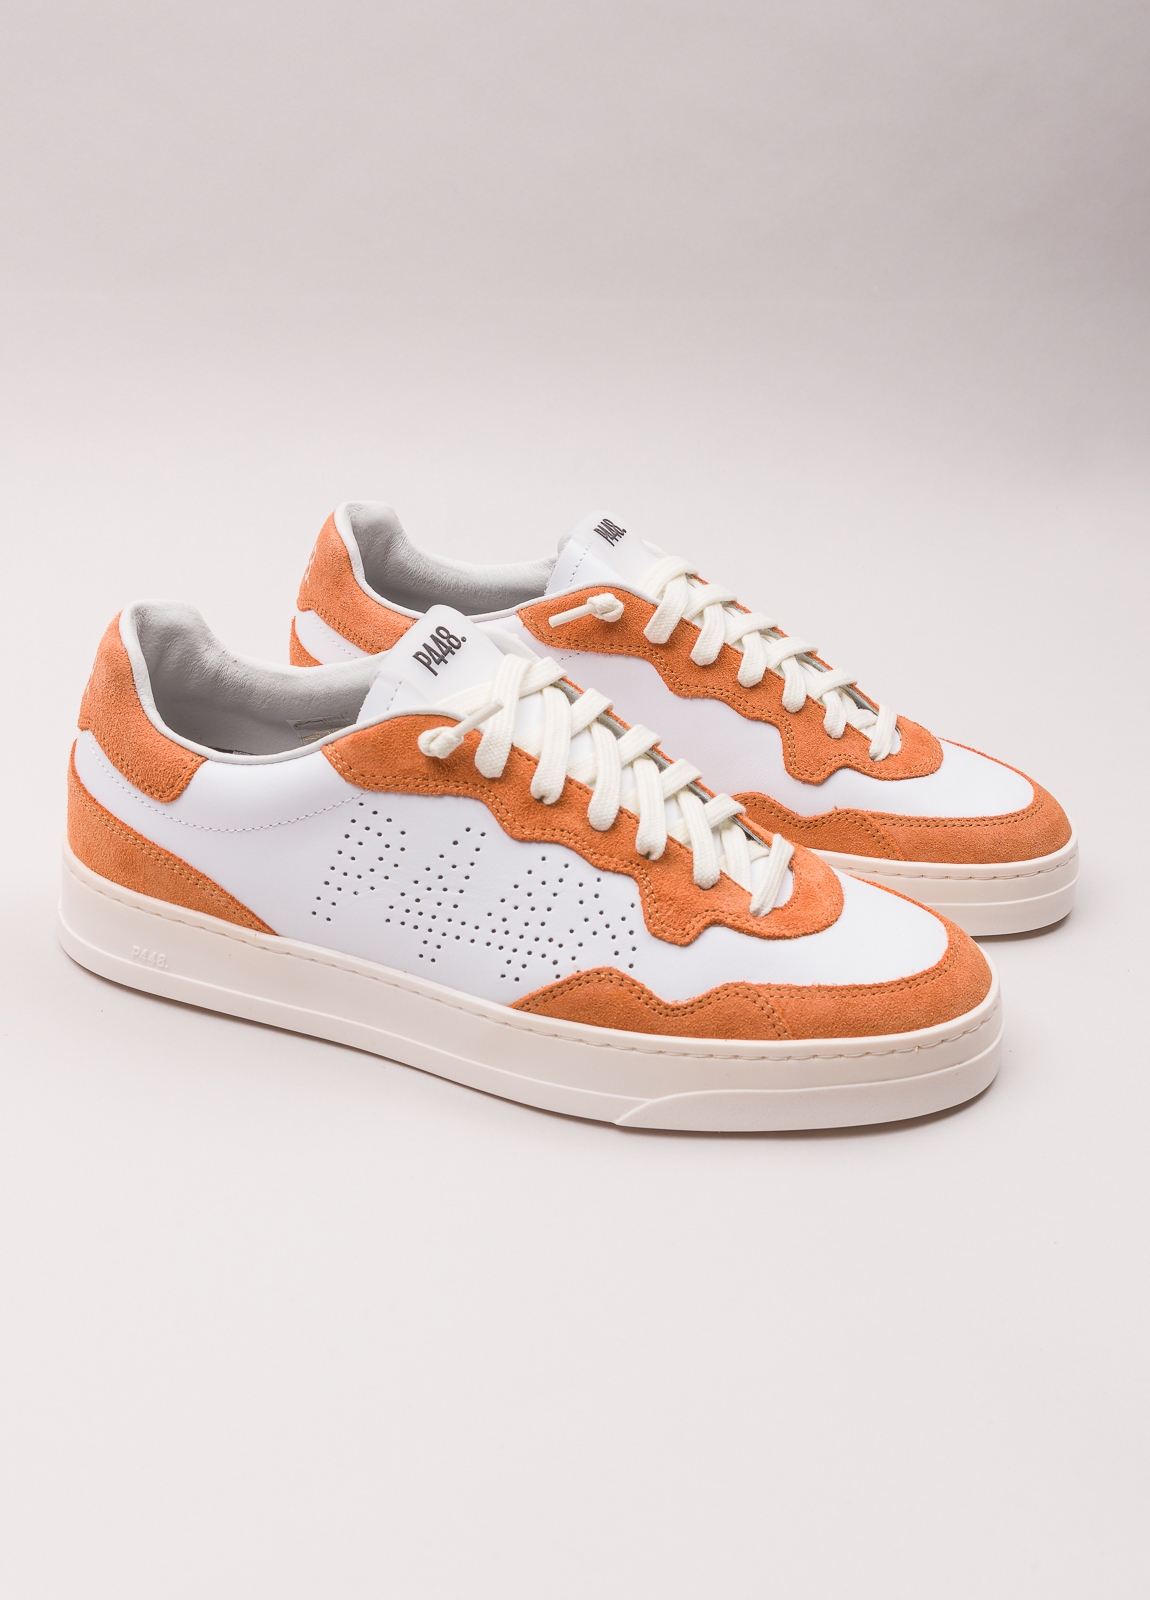 Sneaker P448 blanca y naranja - Ítem4